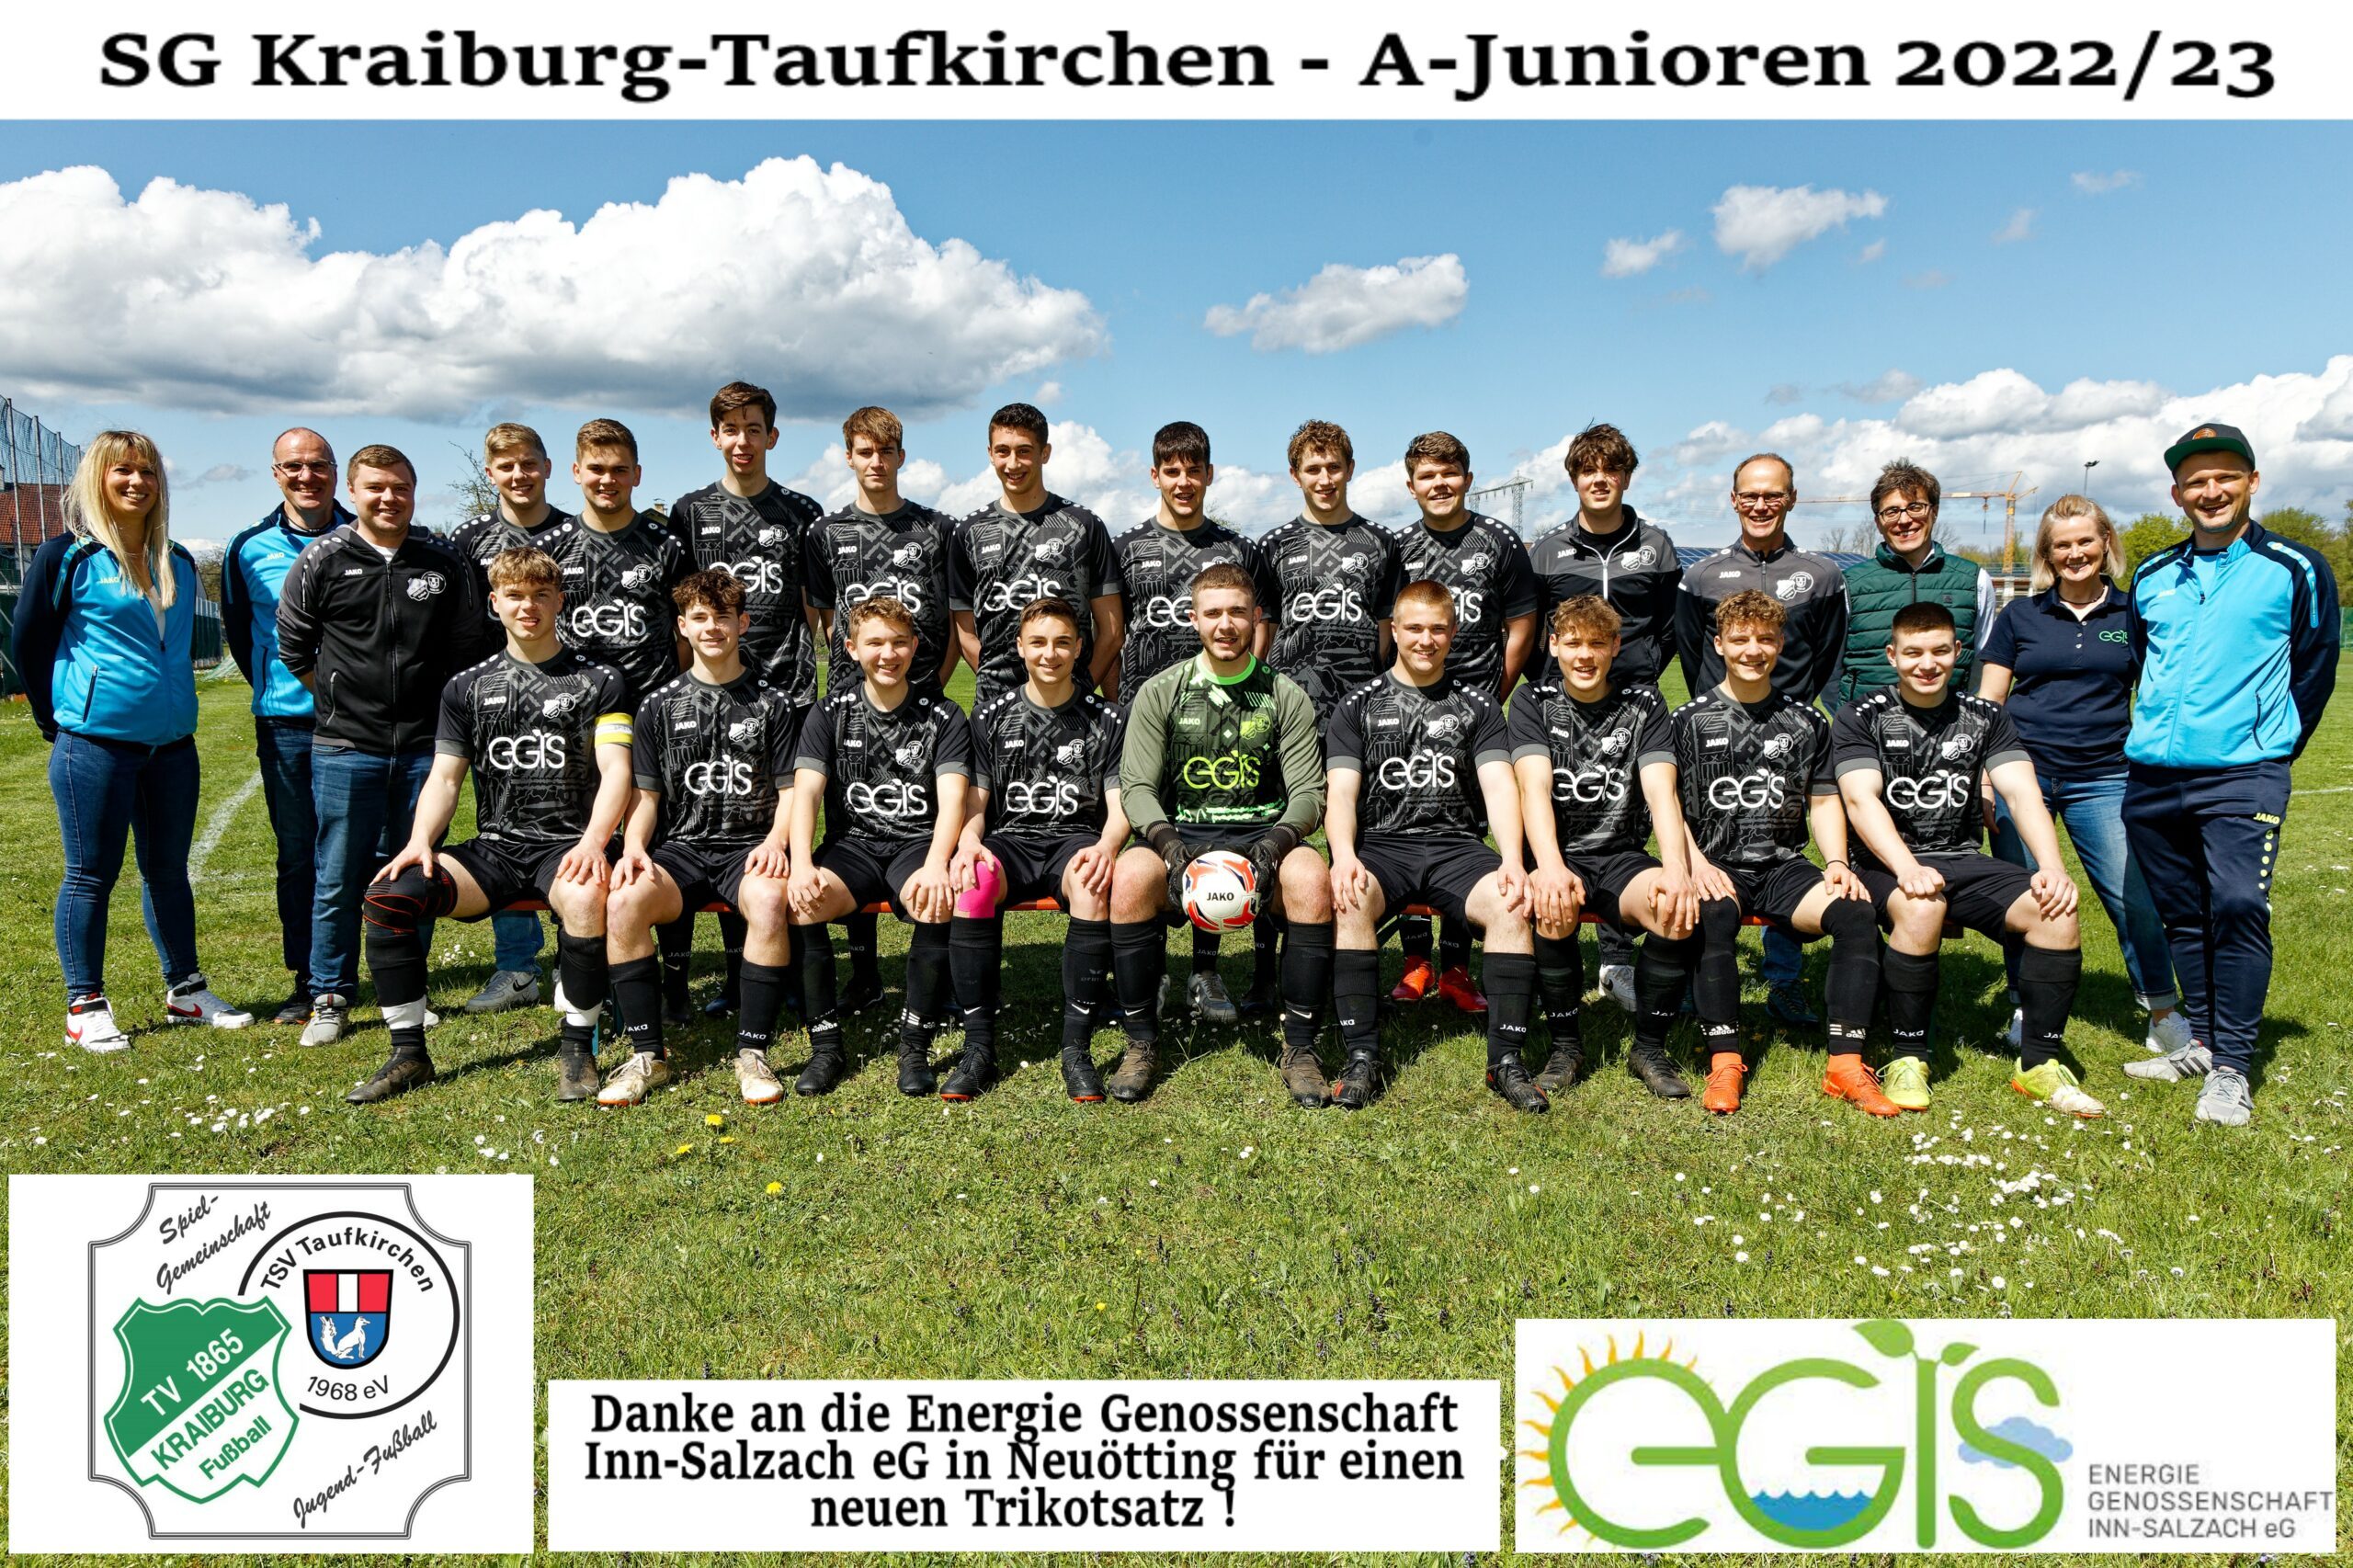 Mannschaft+Sponsor_A-Jugend_SG-Kraiburg-Taufkirchen